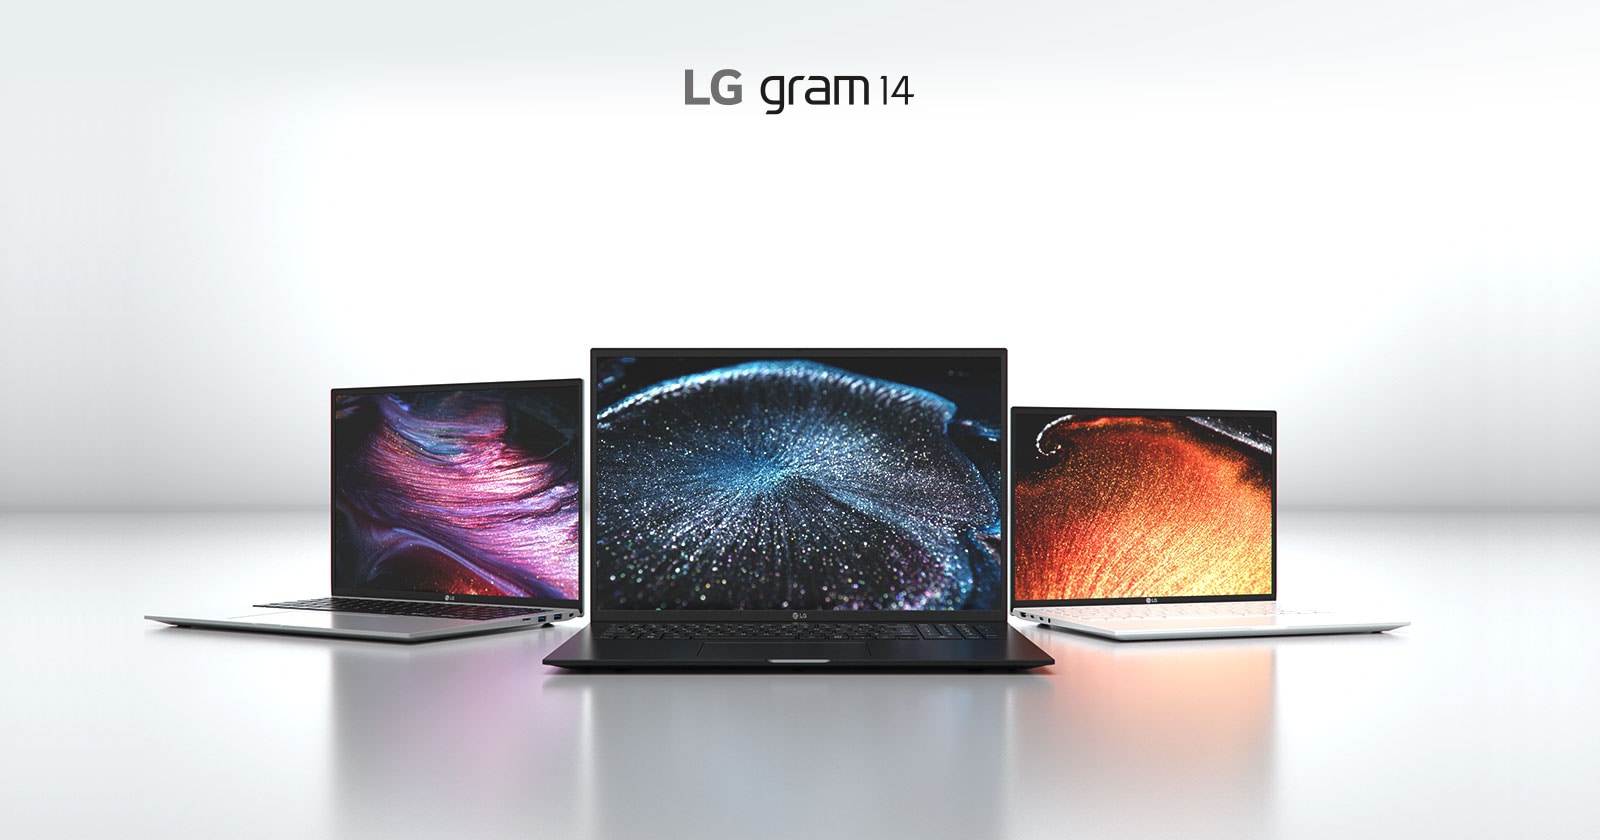 LG gram 14 mang tới trải nghiệm tuyệt vời với tất cả các tính năng trong một chiếc máy nhẹ chưa từng thấy